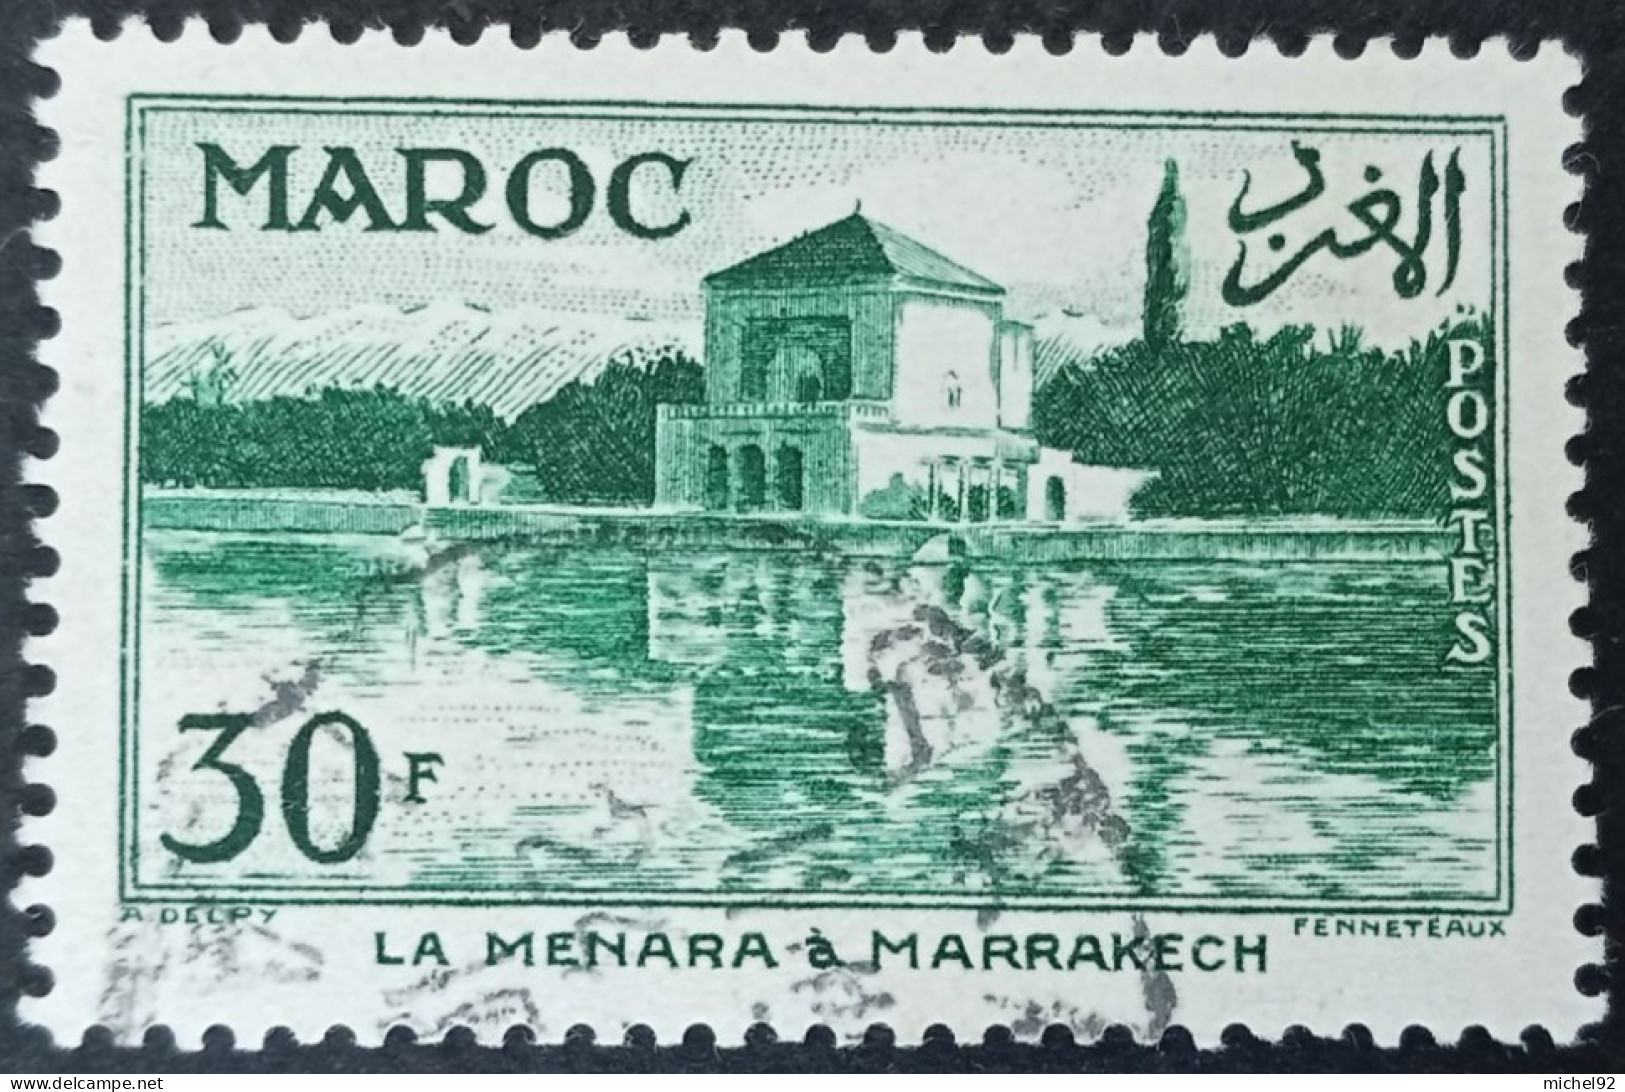 Maroc 1955-56 - YT N°358 - Oblitéré - Oblitérés